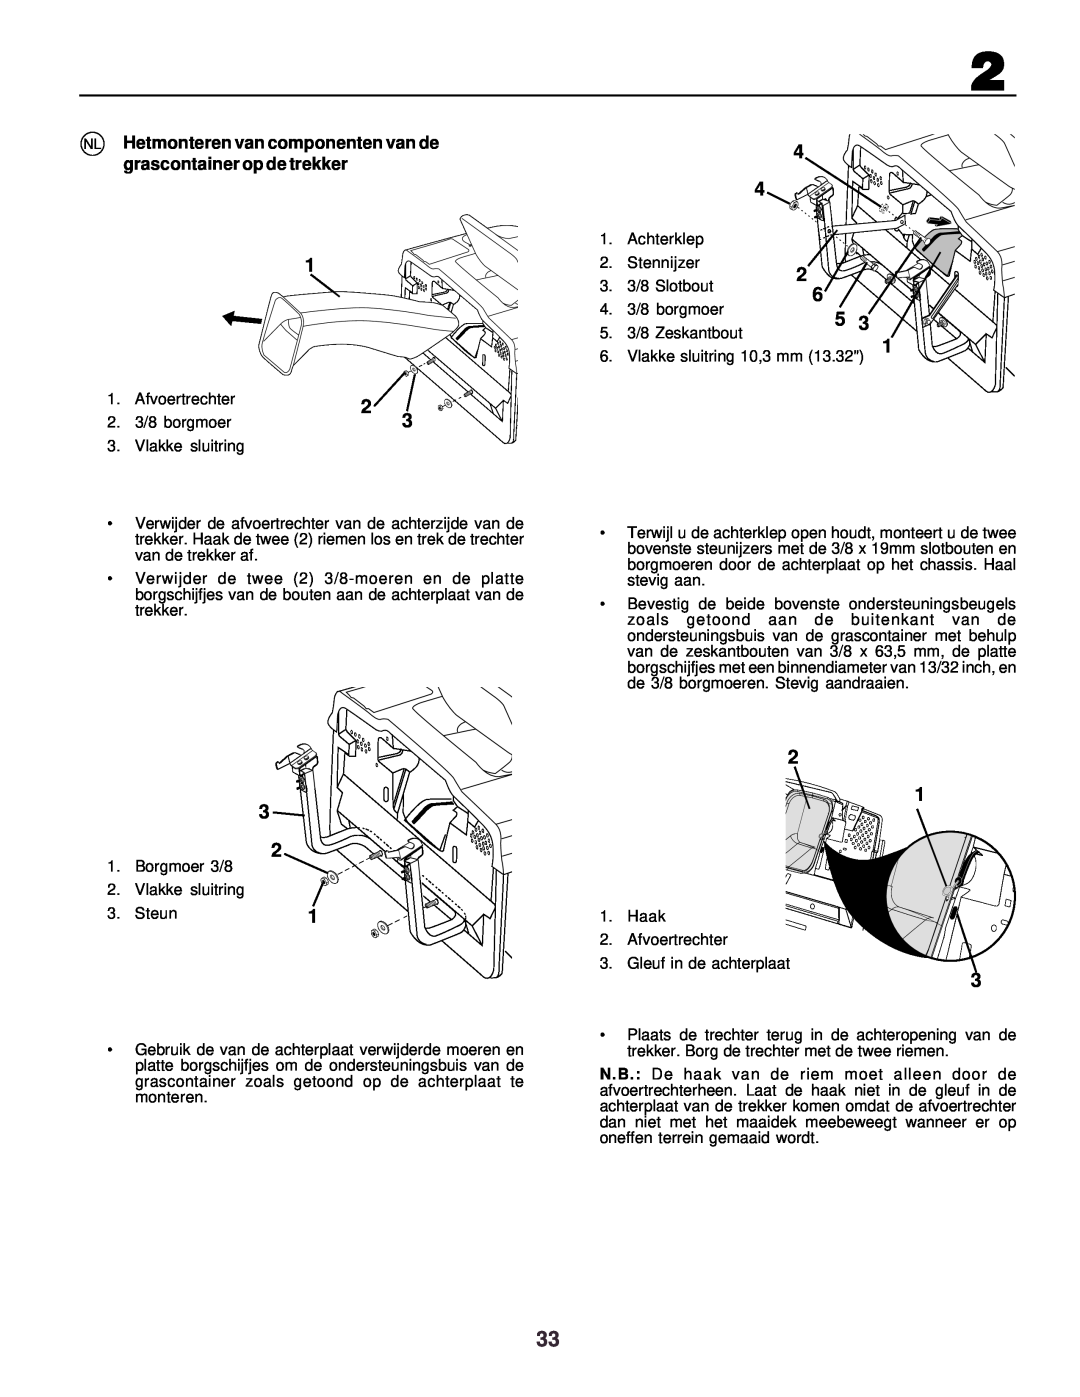 Husqvarna CTH130 instruction manual NL Hetmonteren van componenten van de grascontainer op de trekker, sluitring 